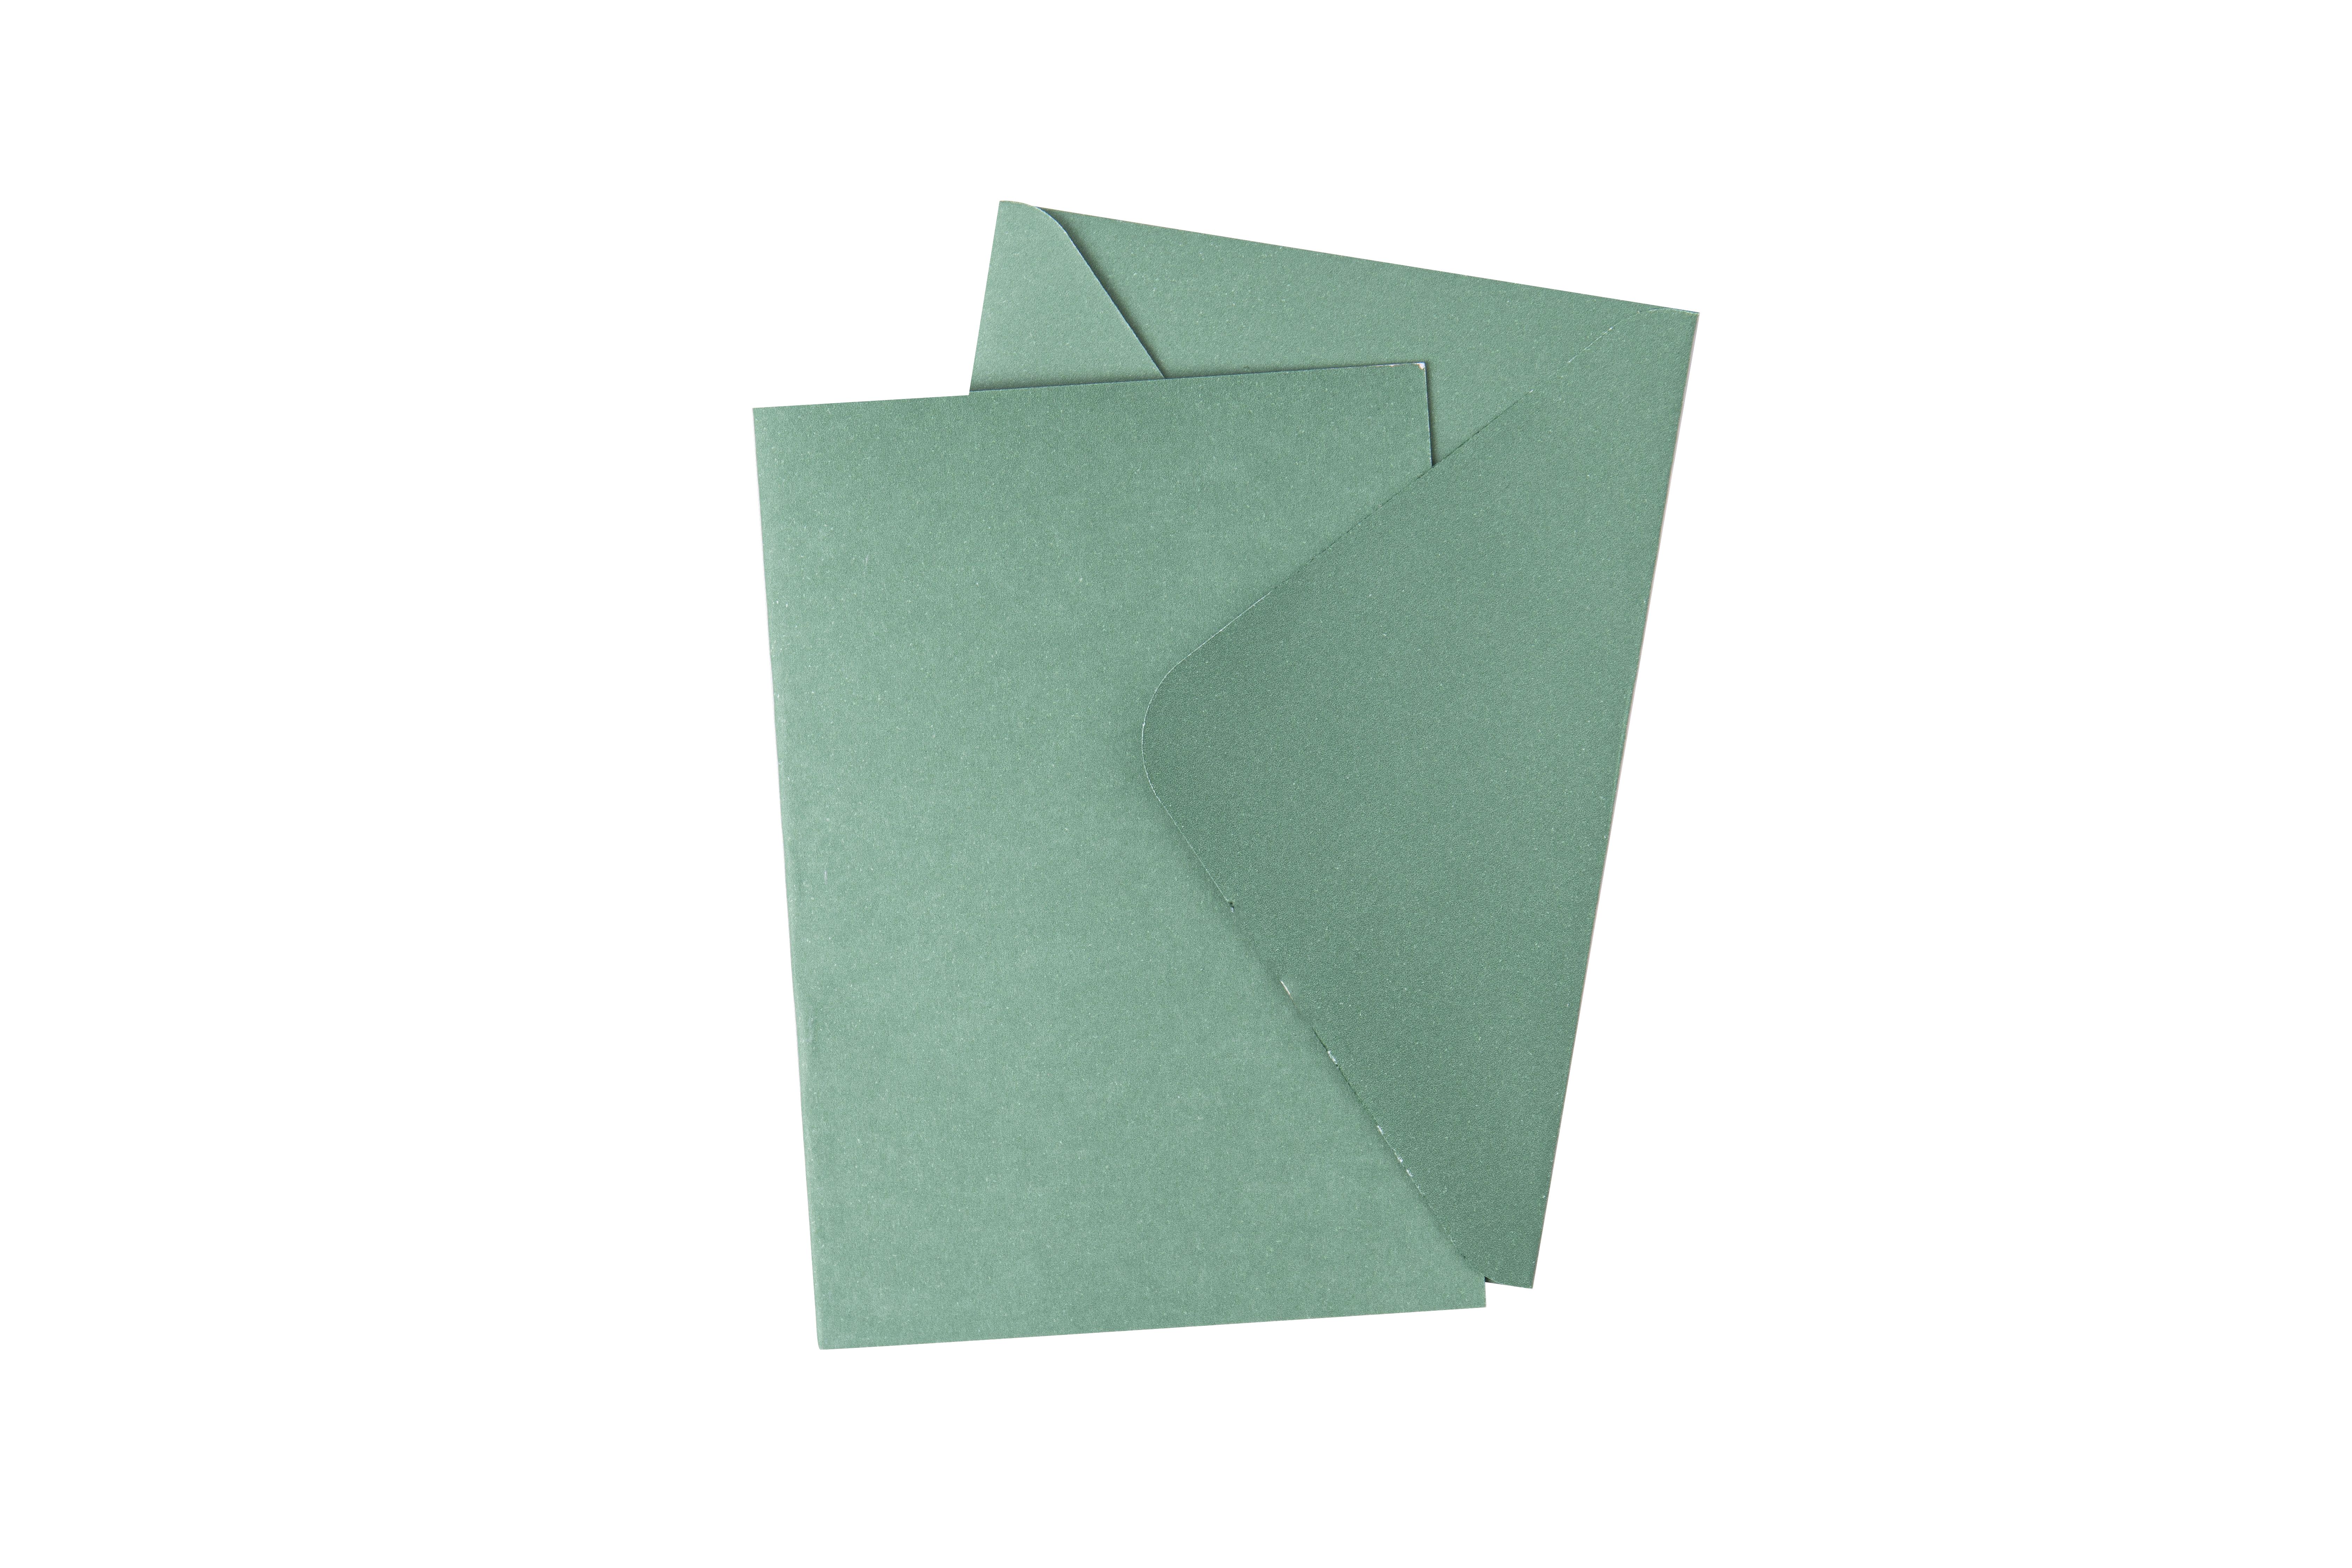 Sizzix • Paquete de tarjetas y sobres Surfacez A6 Abeto, 10 unidades